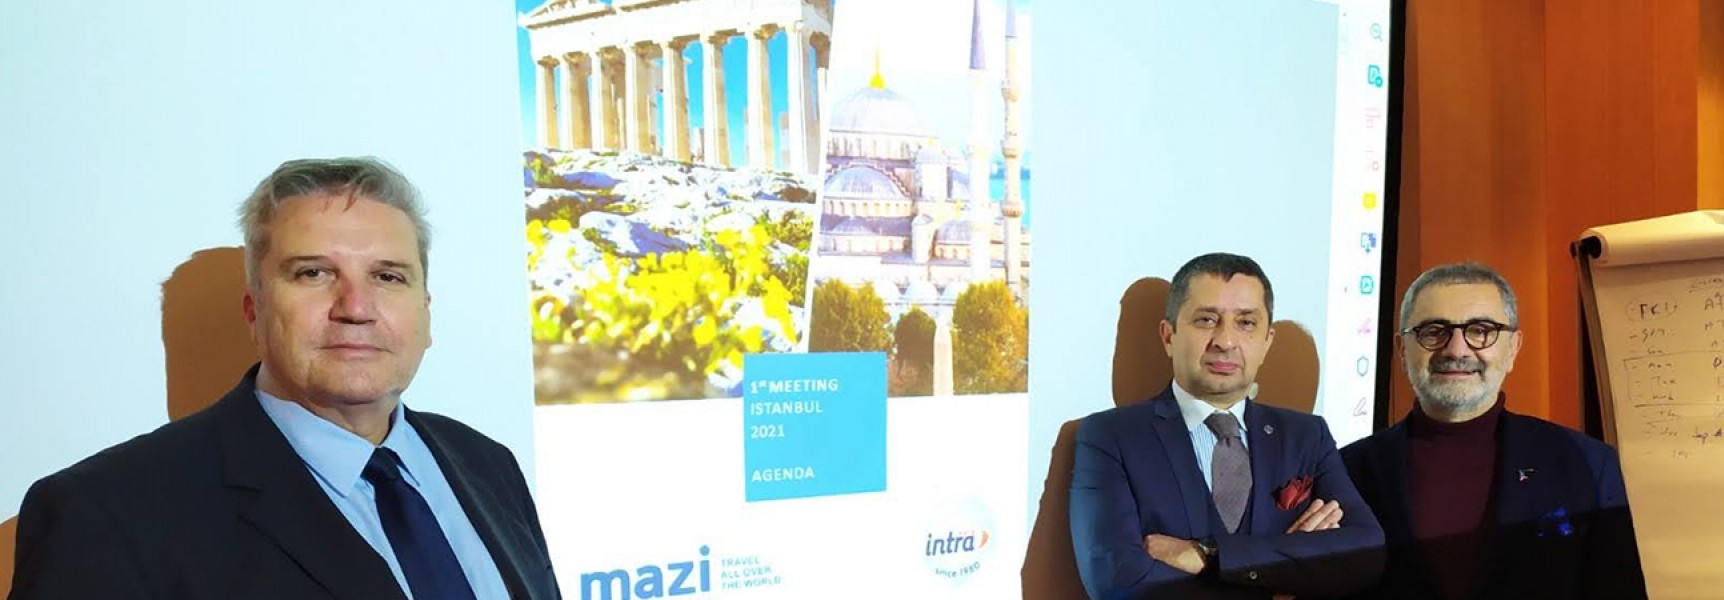 Το Mazi Travel and Events ενώνει τις δυνάμεις του με την Intra travel